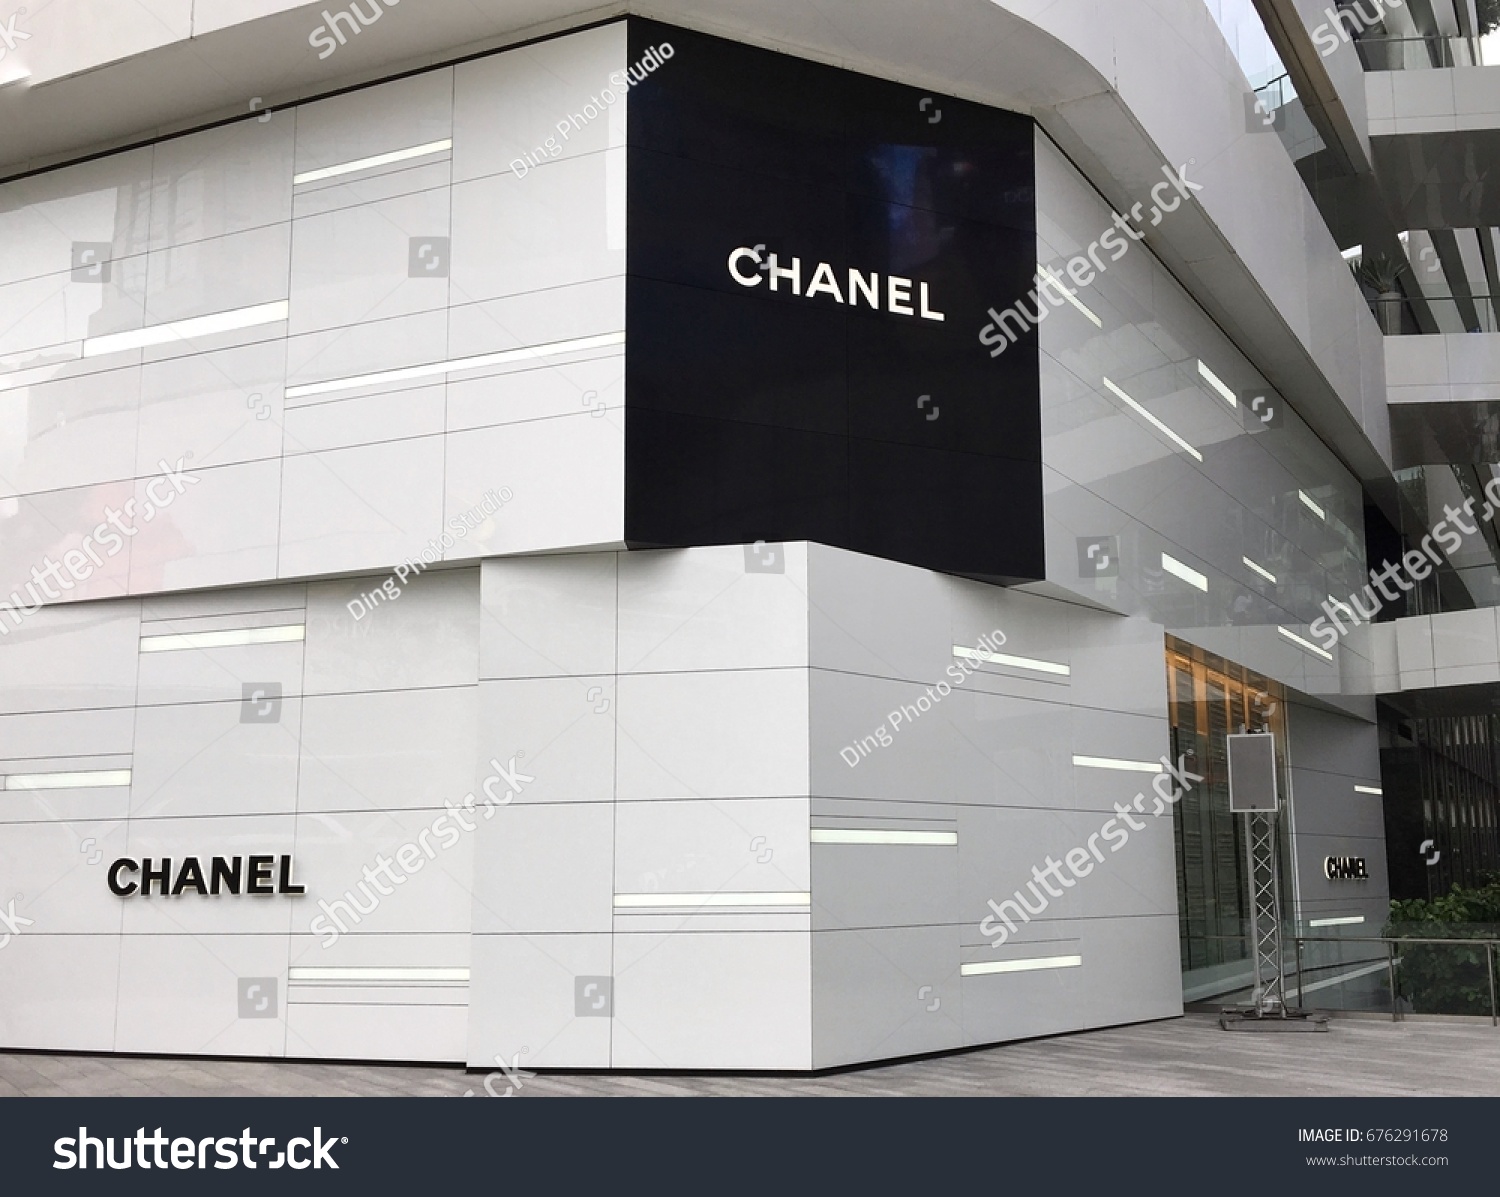 Descubra Chanel Logo Front Chanel Boutique Store Imagenes De Stock En Hd Y Millones De Otras Fotos Ilustraciones Y Vectores En Stock Libres De Regalias En La Coleccion De Shutterstock Se Agregan Miles De Imagenes Nuevas De Alta Calidad Todos Los Dias